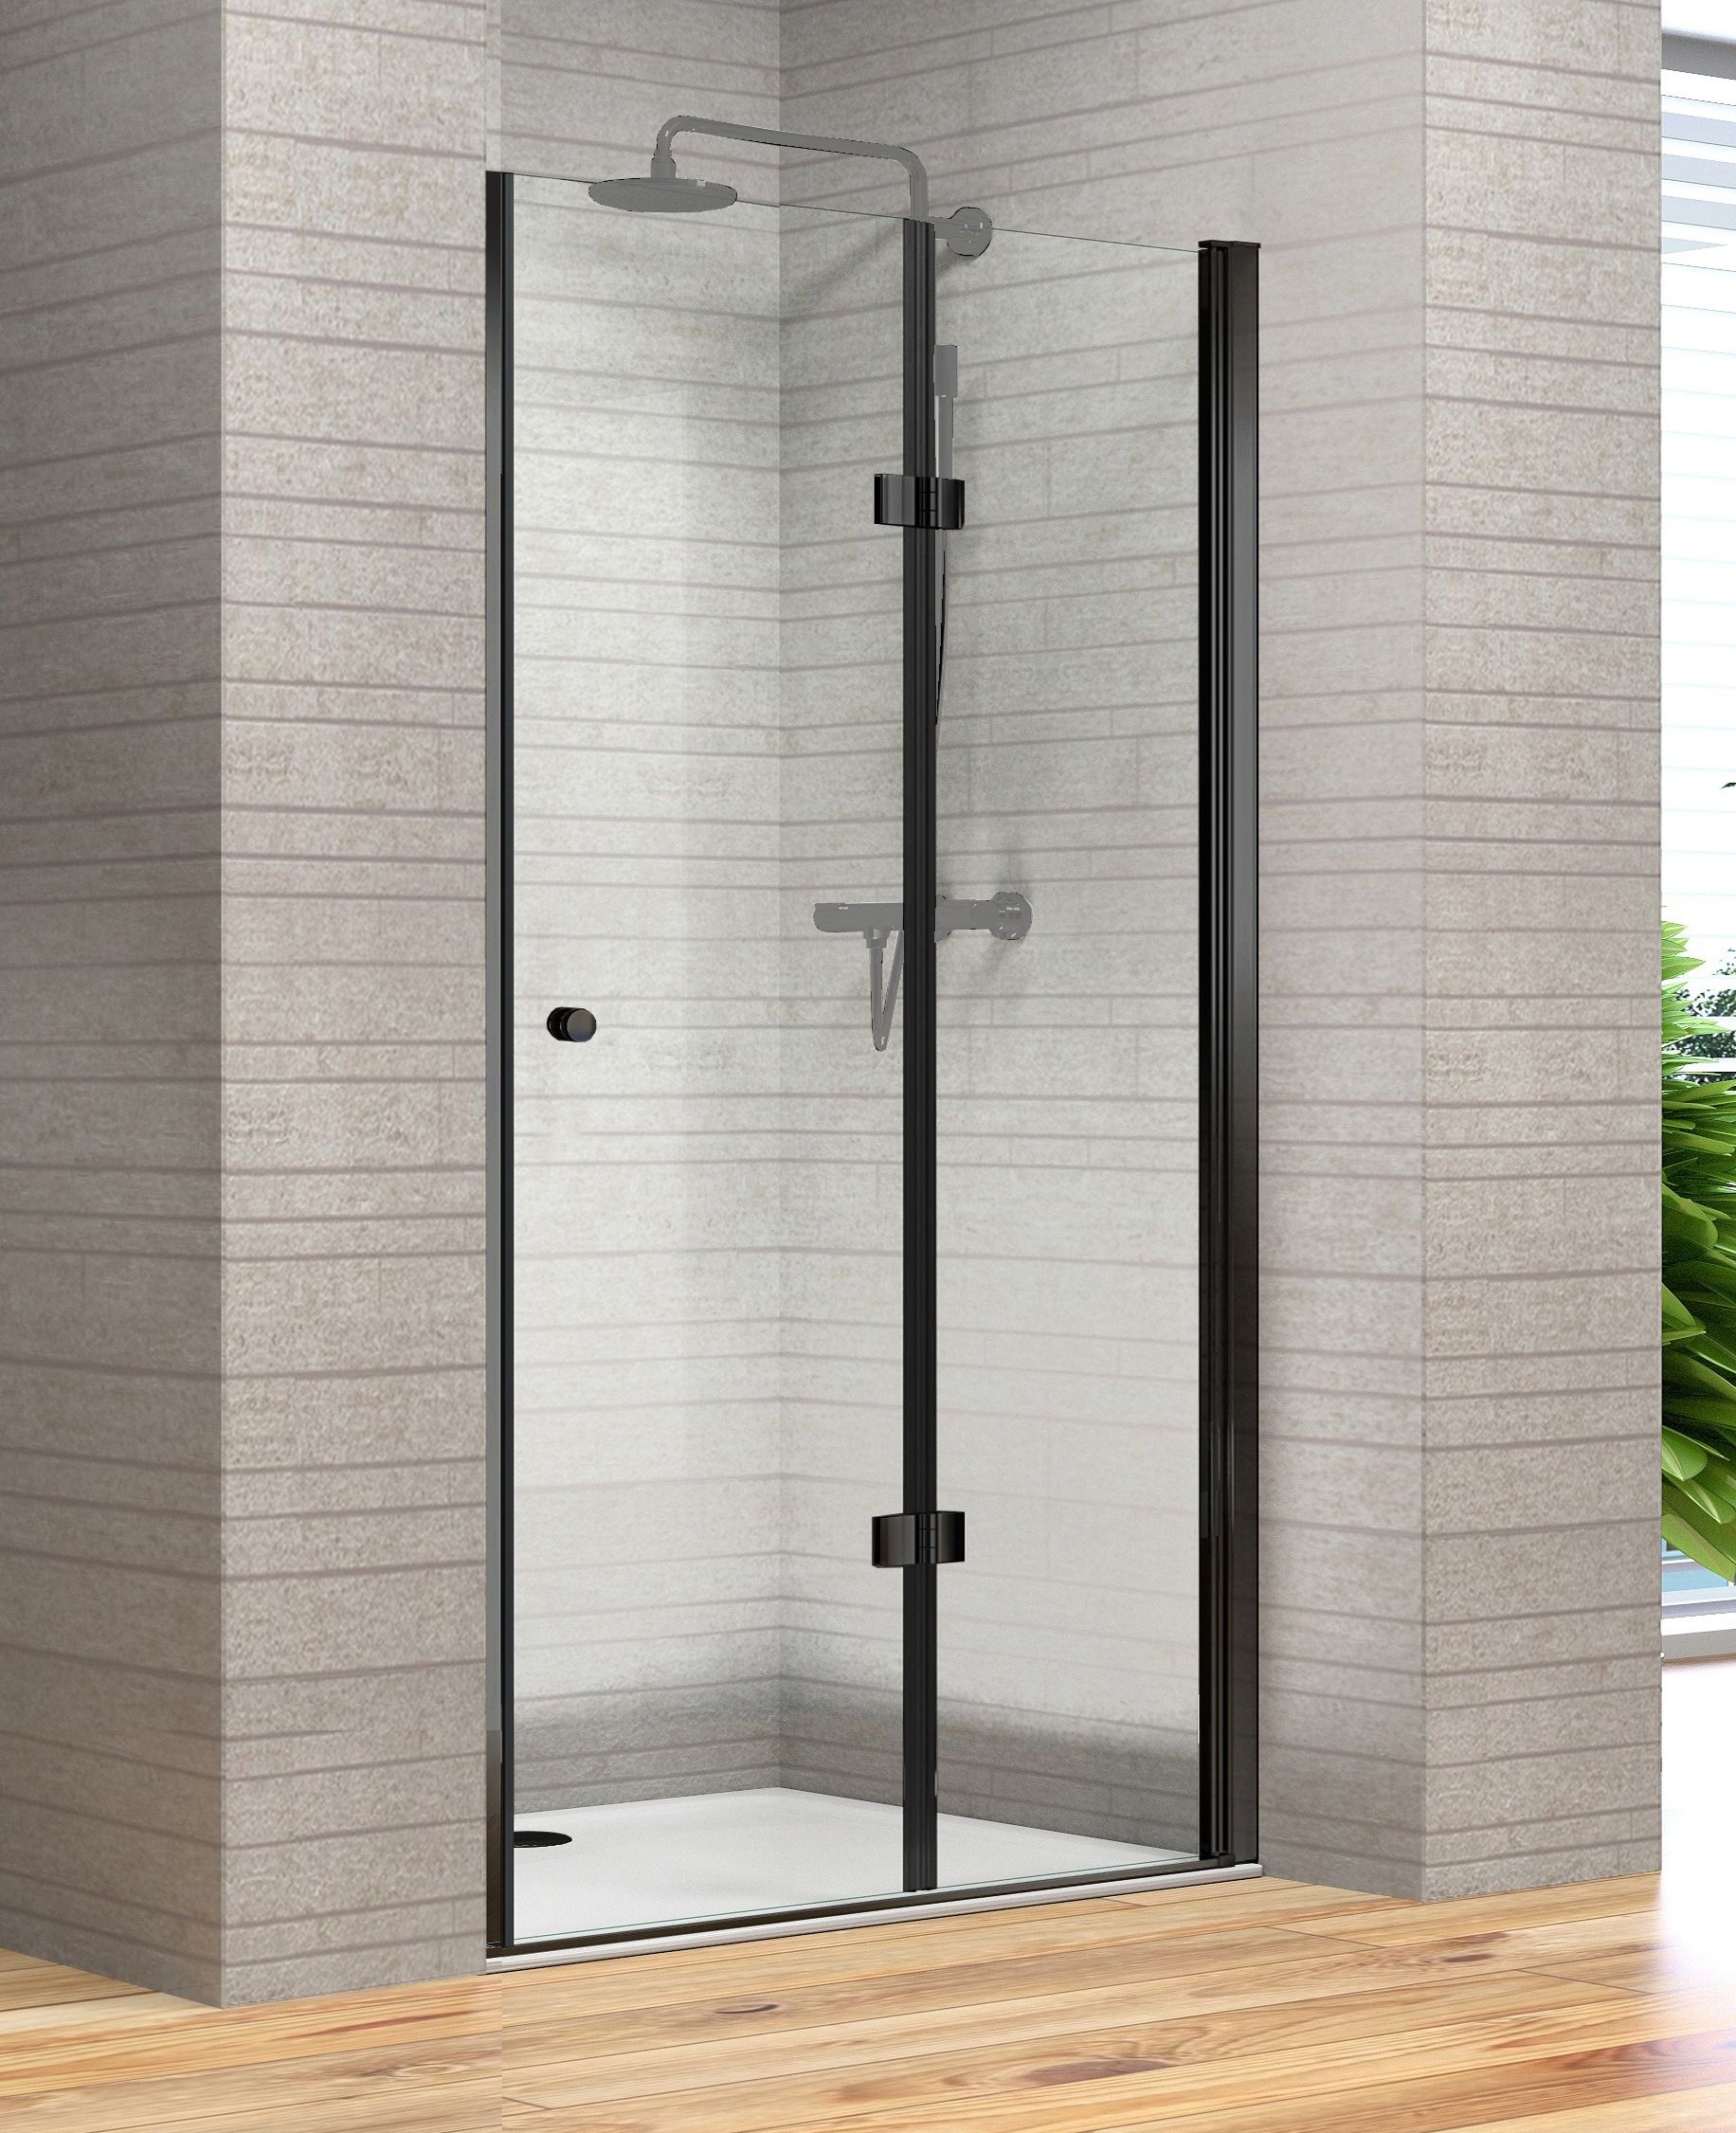 1 shower door folding door